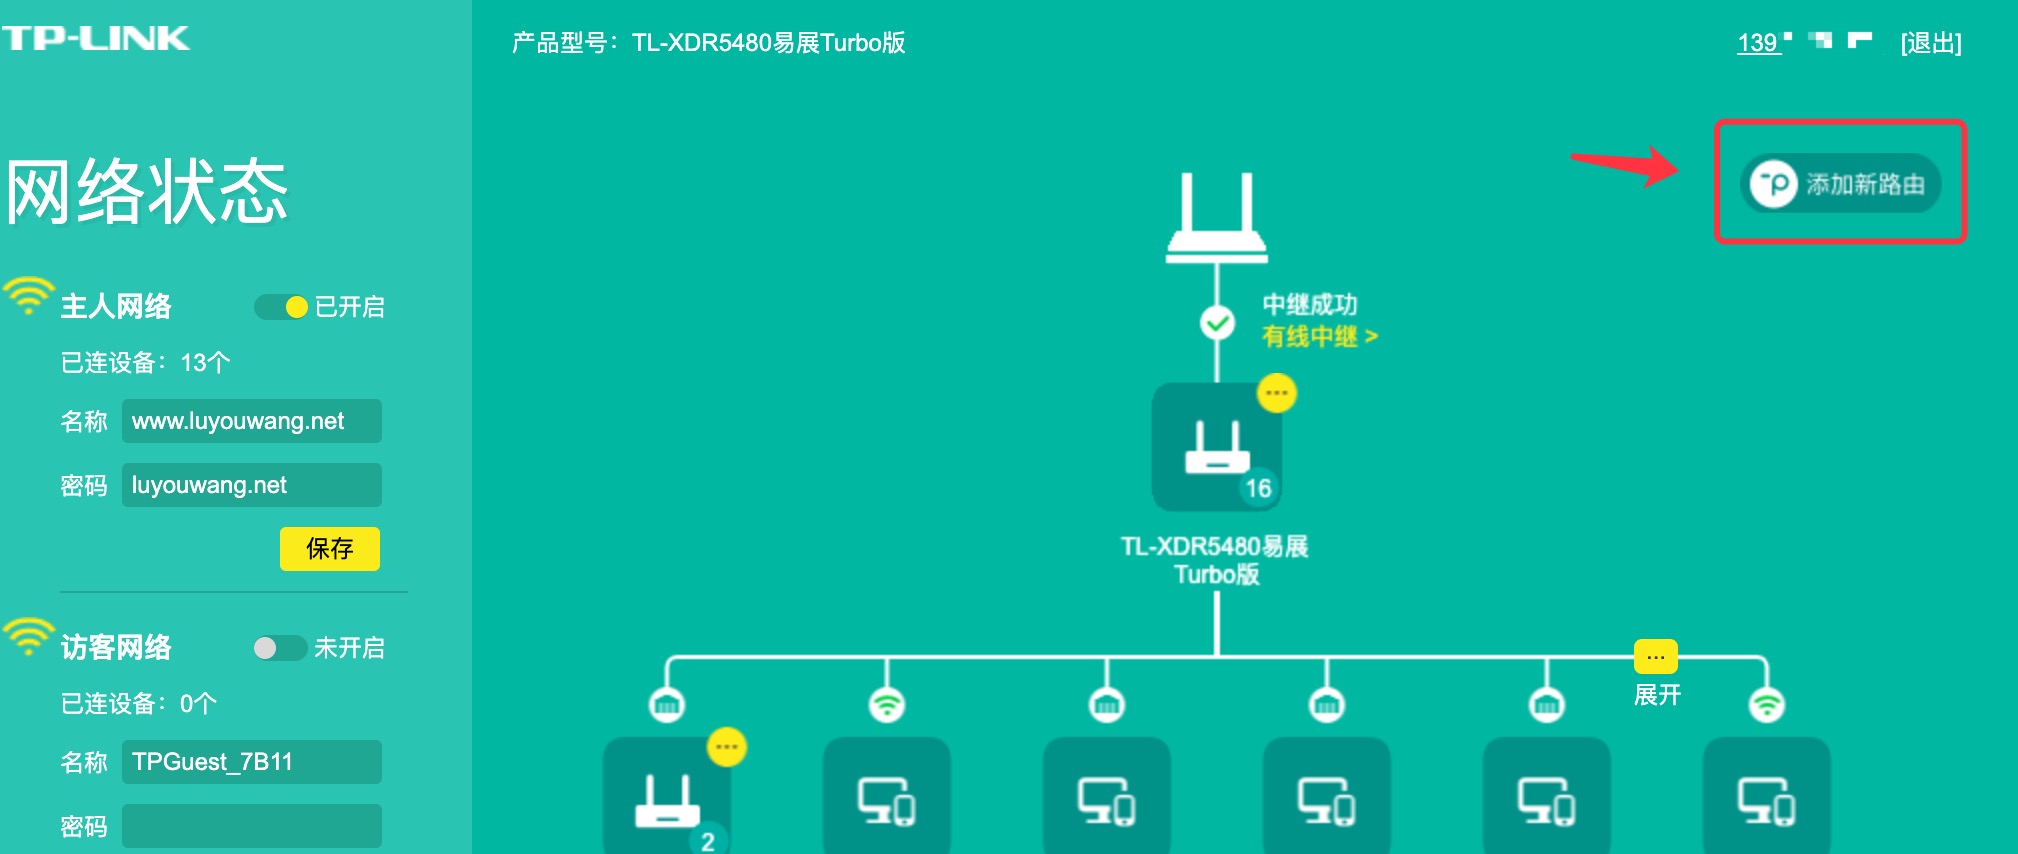 两台TP-LINK无线路由器易展组网教程